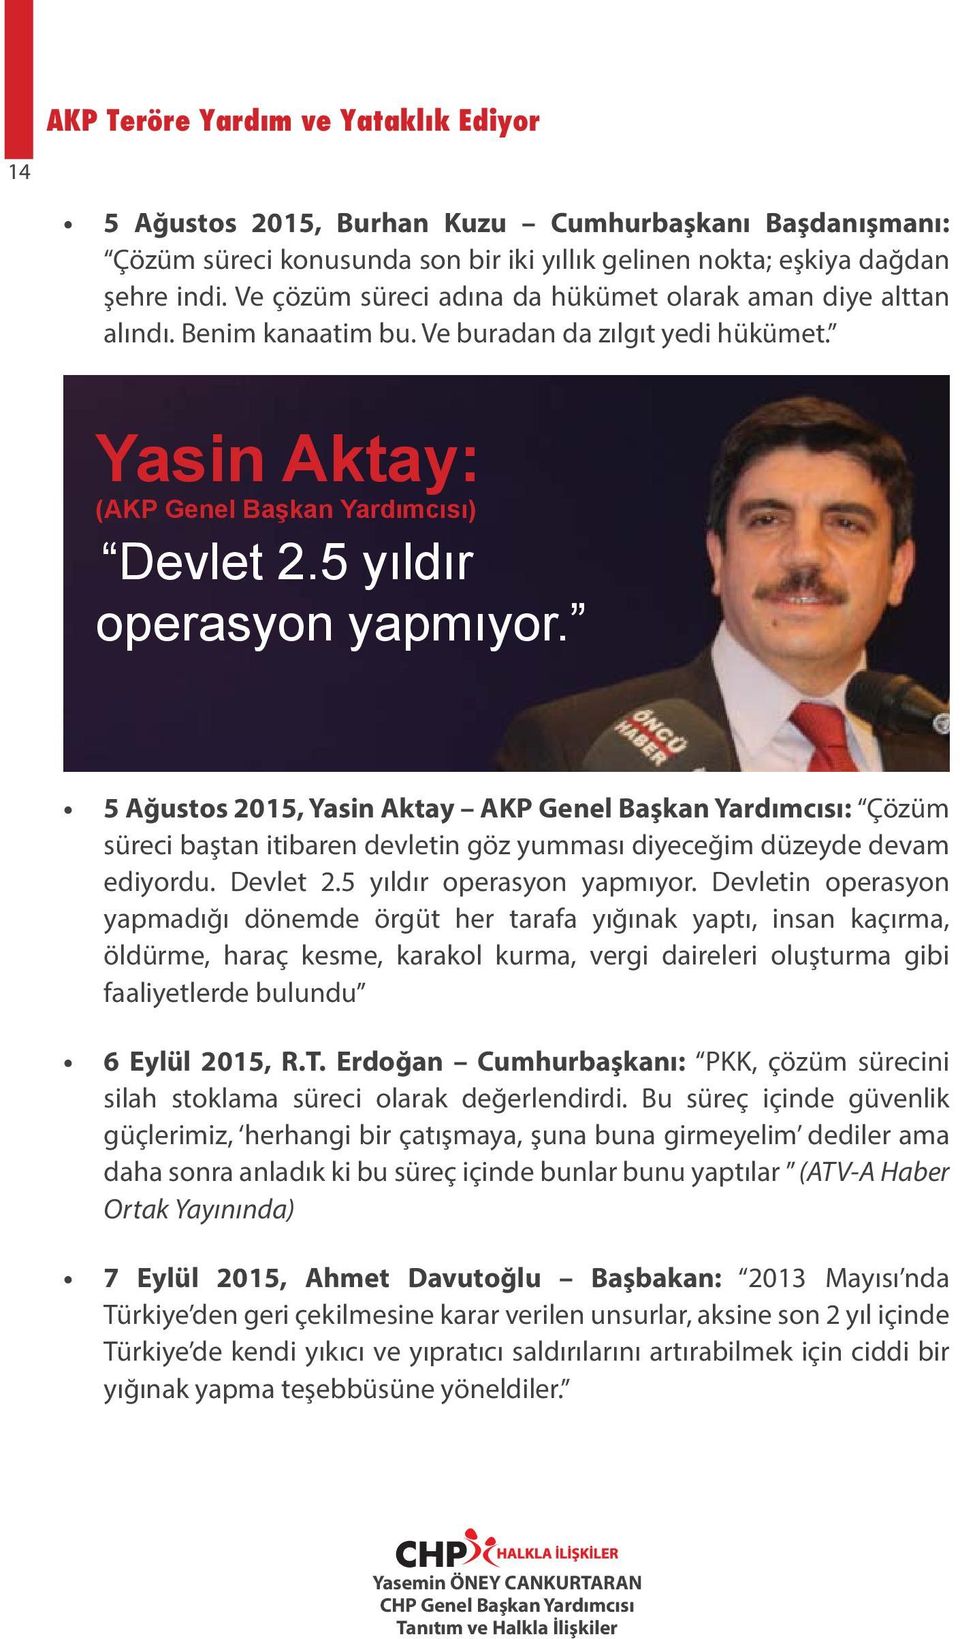 5 Ağustos 2015, Yasin Aktay AKP Genel Başkan Yardımcısı: Çözüm süreci baştan itibaren devletin göz yumması diyeceğim düzeyde devam ediyordu. Devlet 2.5 yıldır operasyon yapmıyor.